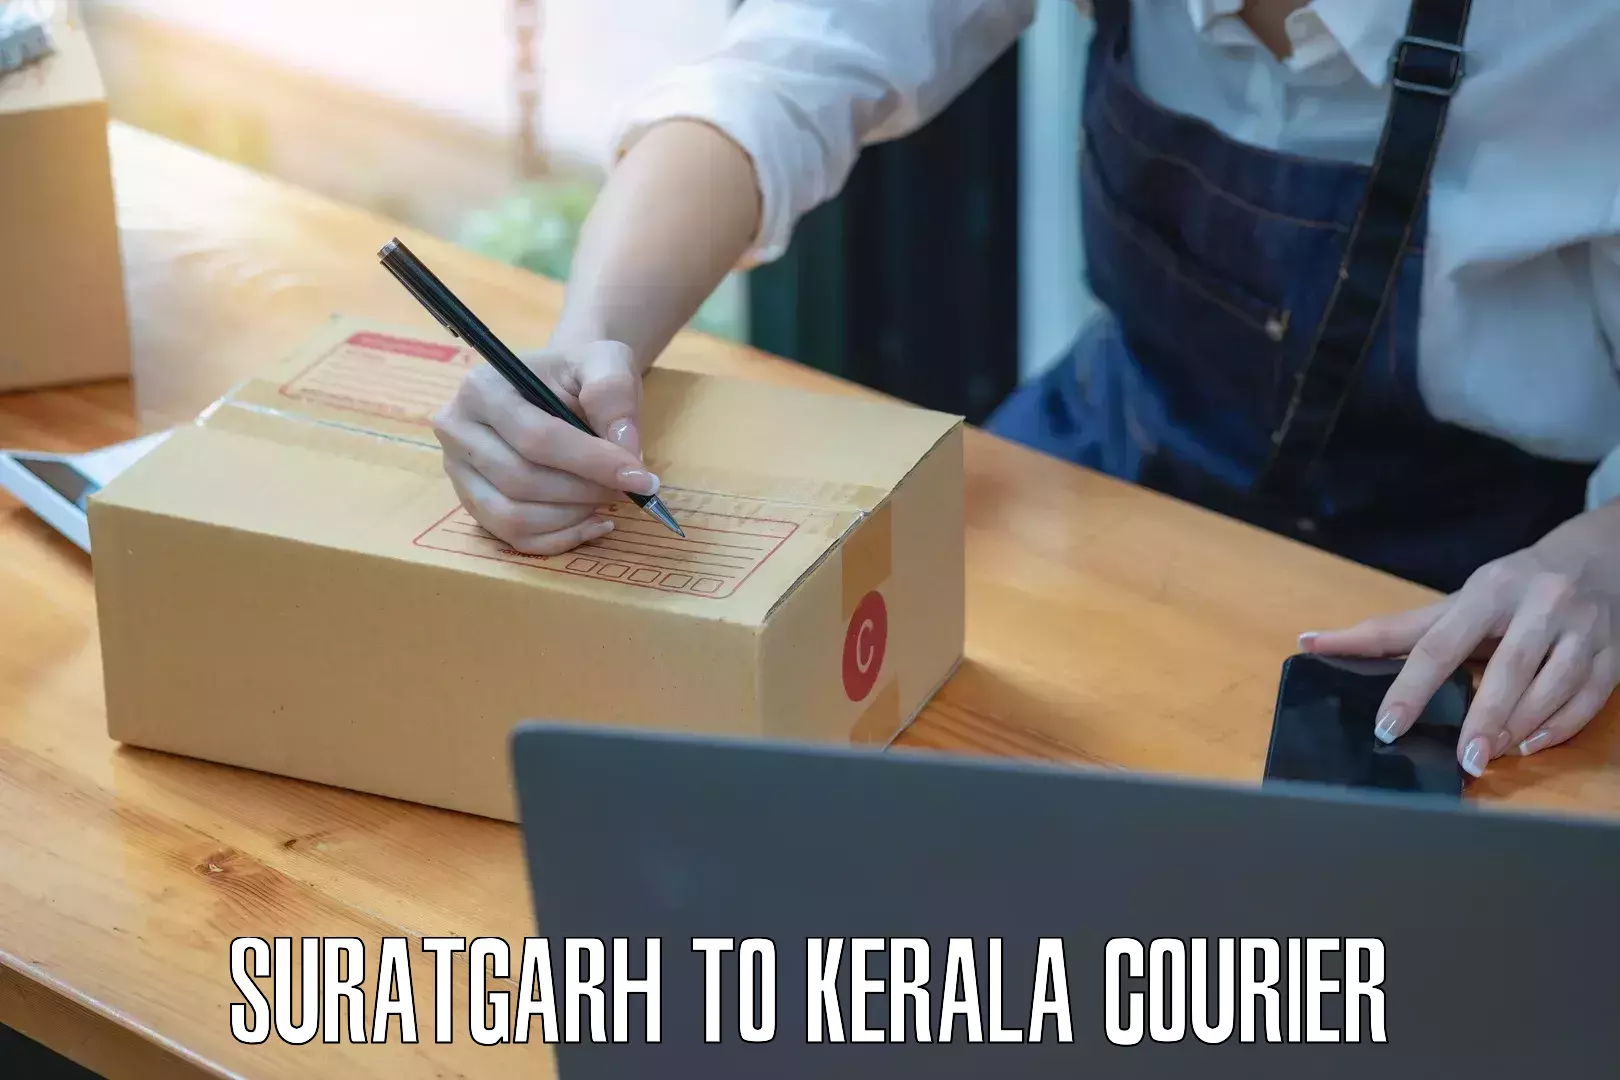 International courier networks Suratgarh to Kuchi